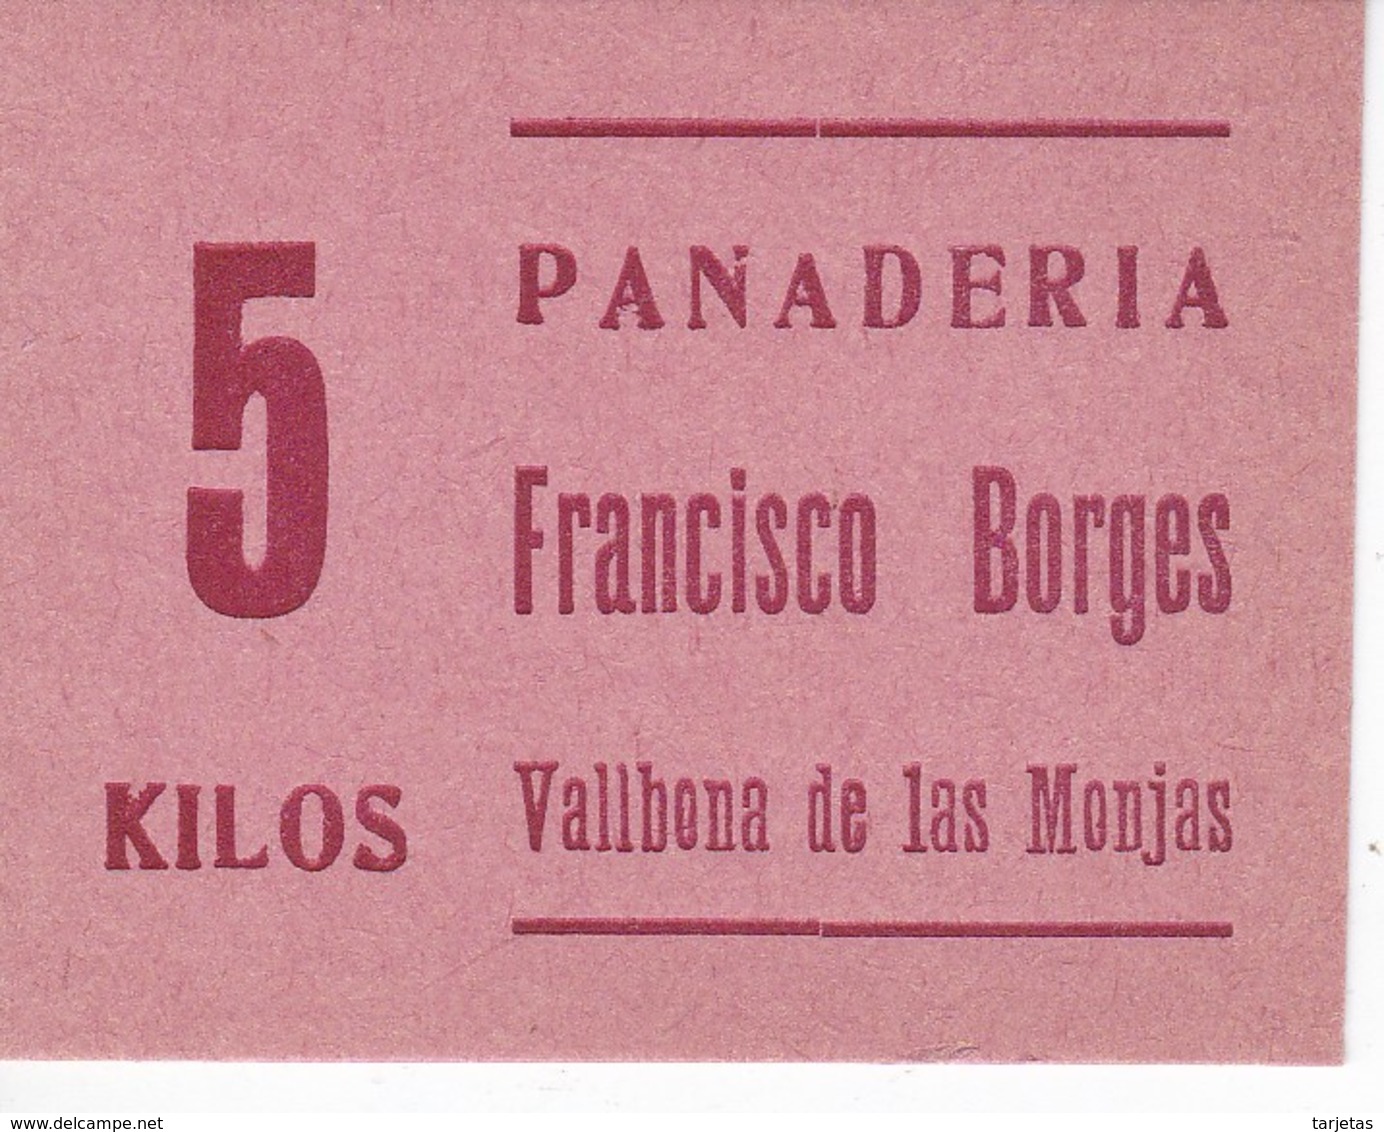 VALE DE 5 KILOS DE PAN DE LA PANADERIA FRANCISCO BORGES DE VALLBONA DE LAS MONJAS (LLEIDA-LERIDA) - Noodgeld